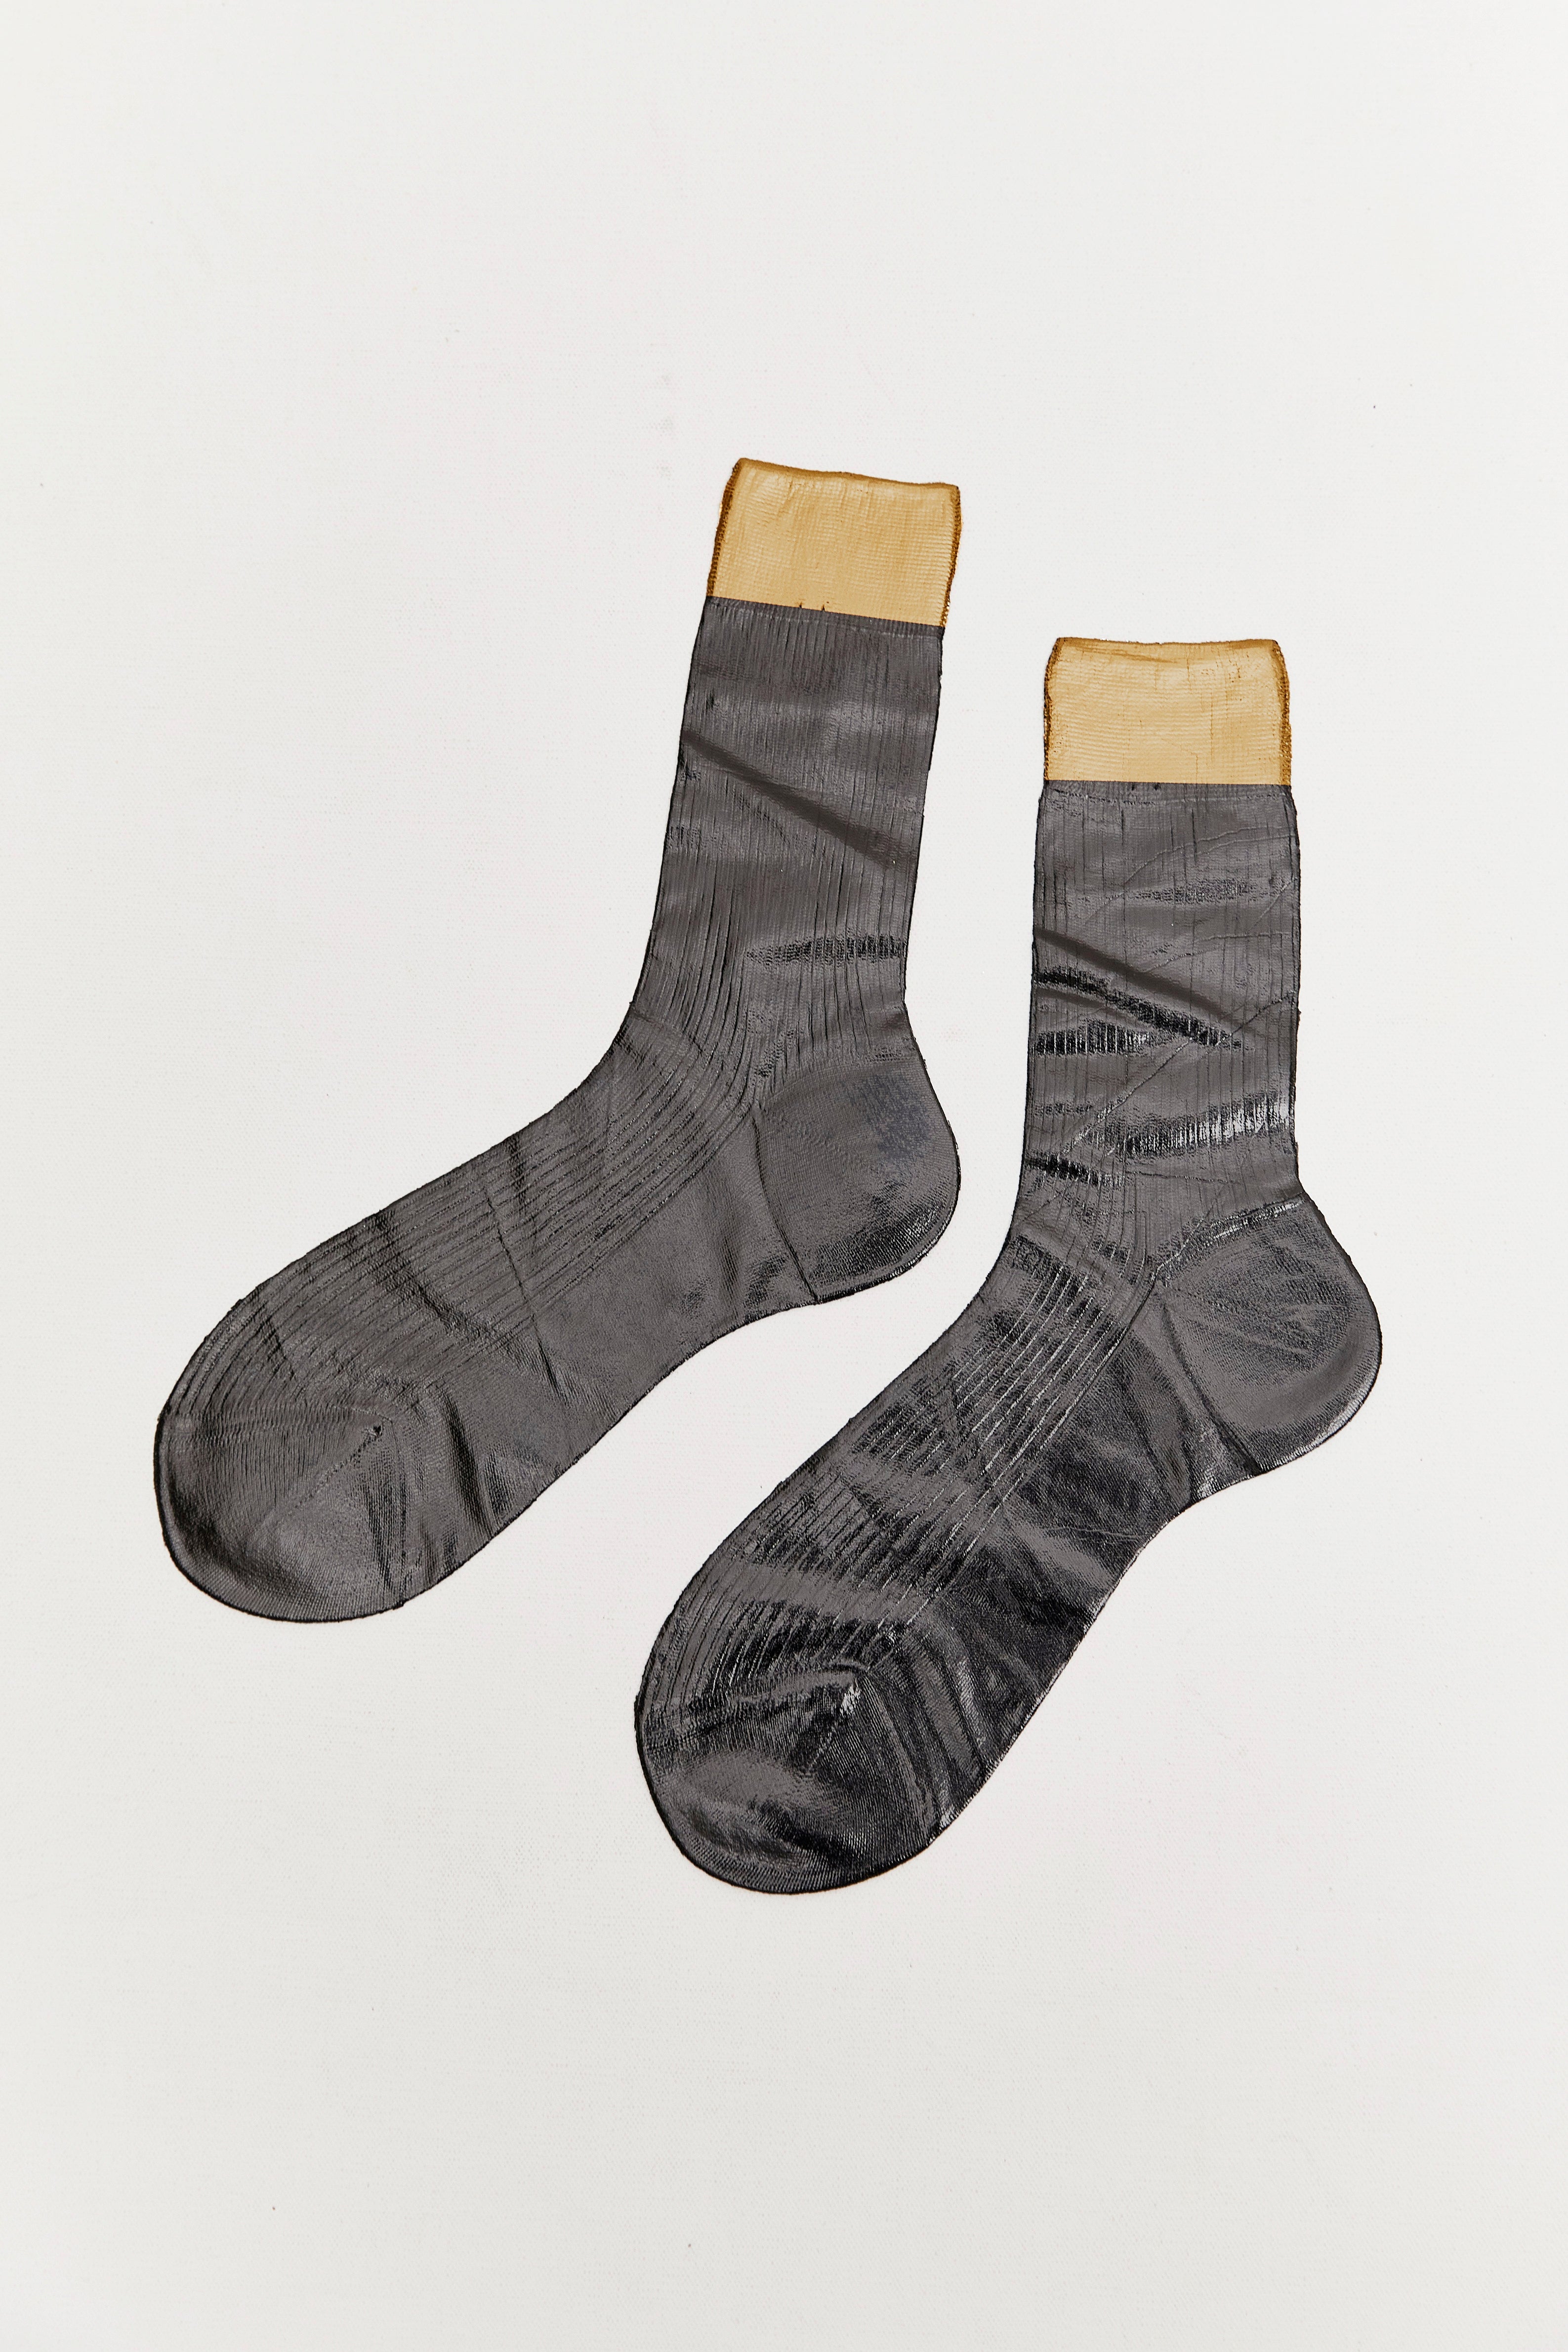 Maria La Rosa's bicolour metallic socks.